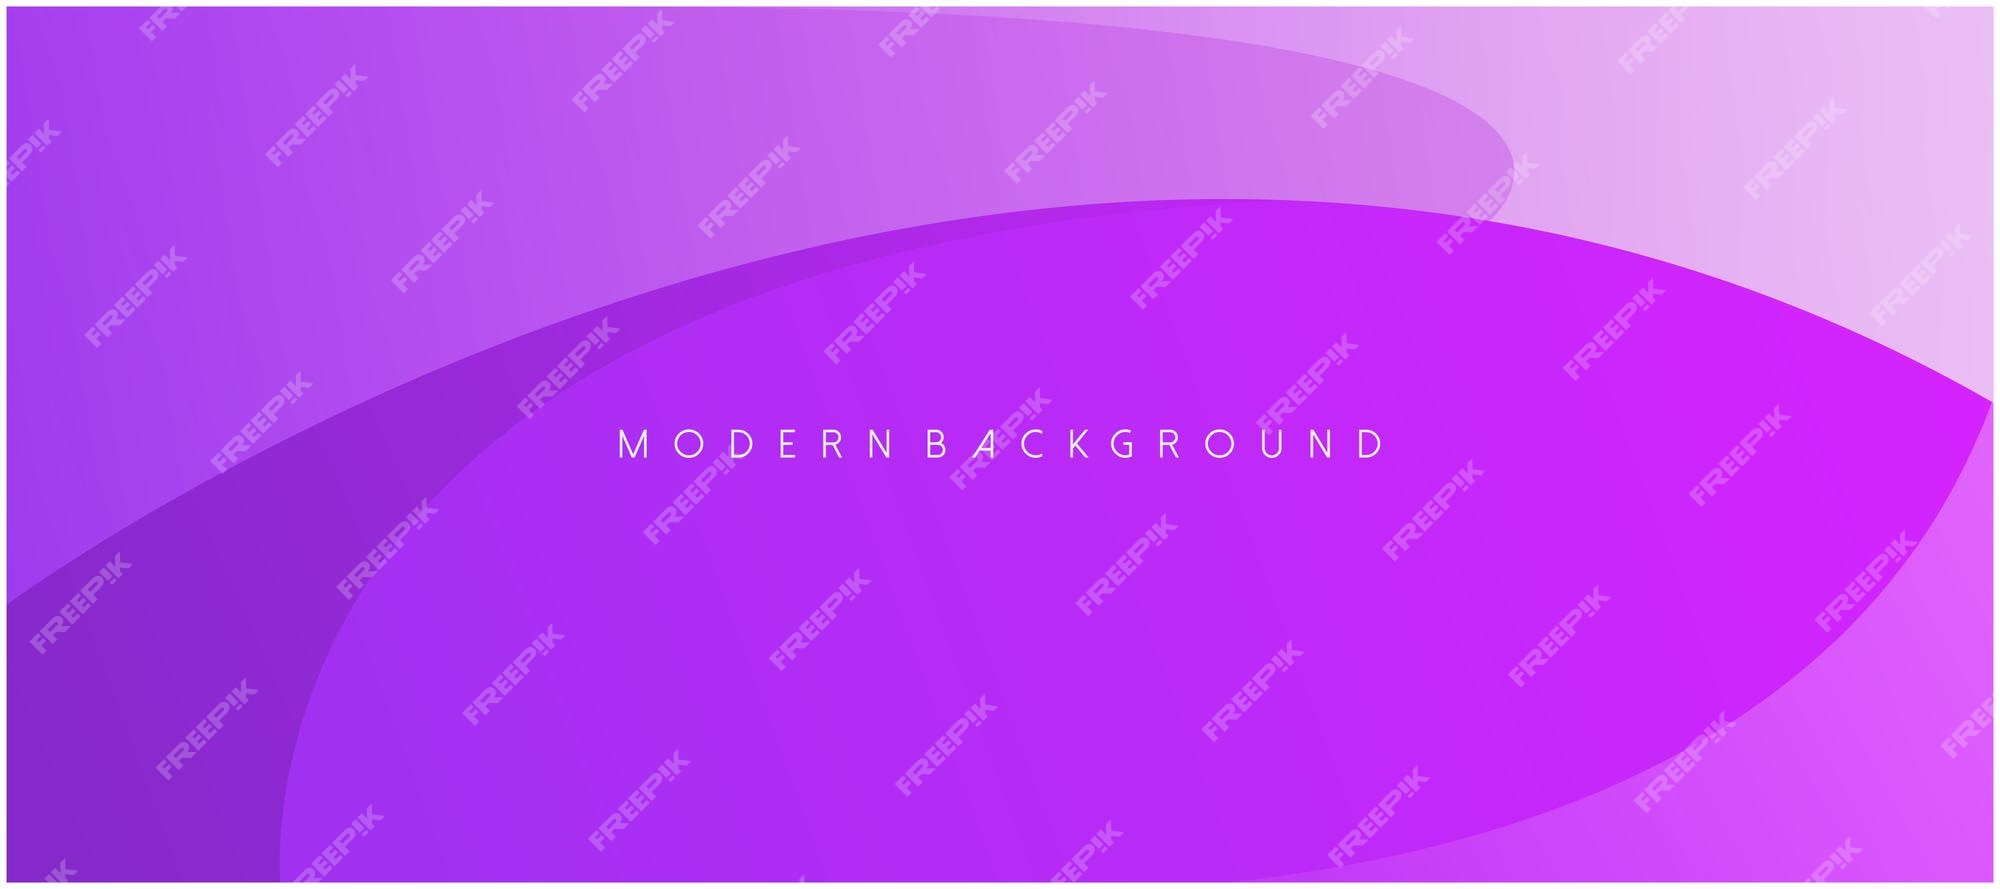 Gradient Background: Màu sắc là thành phần không thể thiếu trong bất kỳ thiết kế nào. Hình ảnh liên quan đến từ khóa \